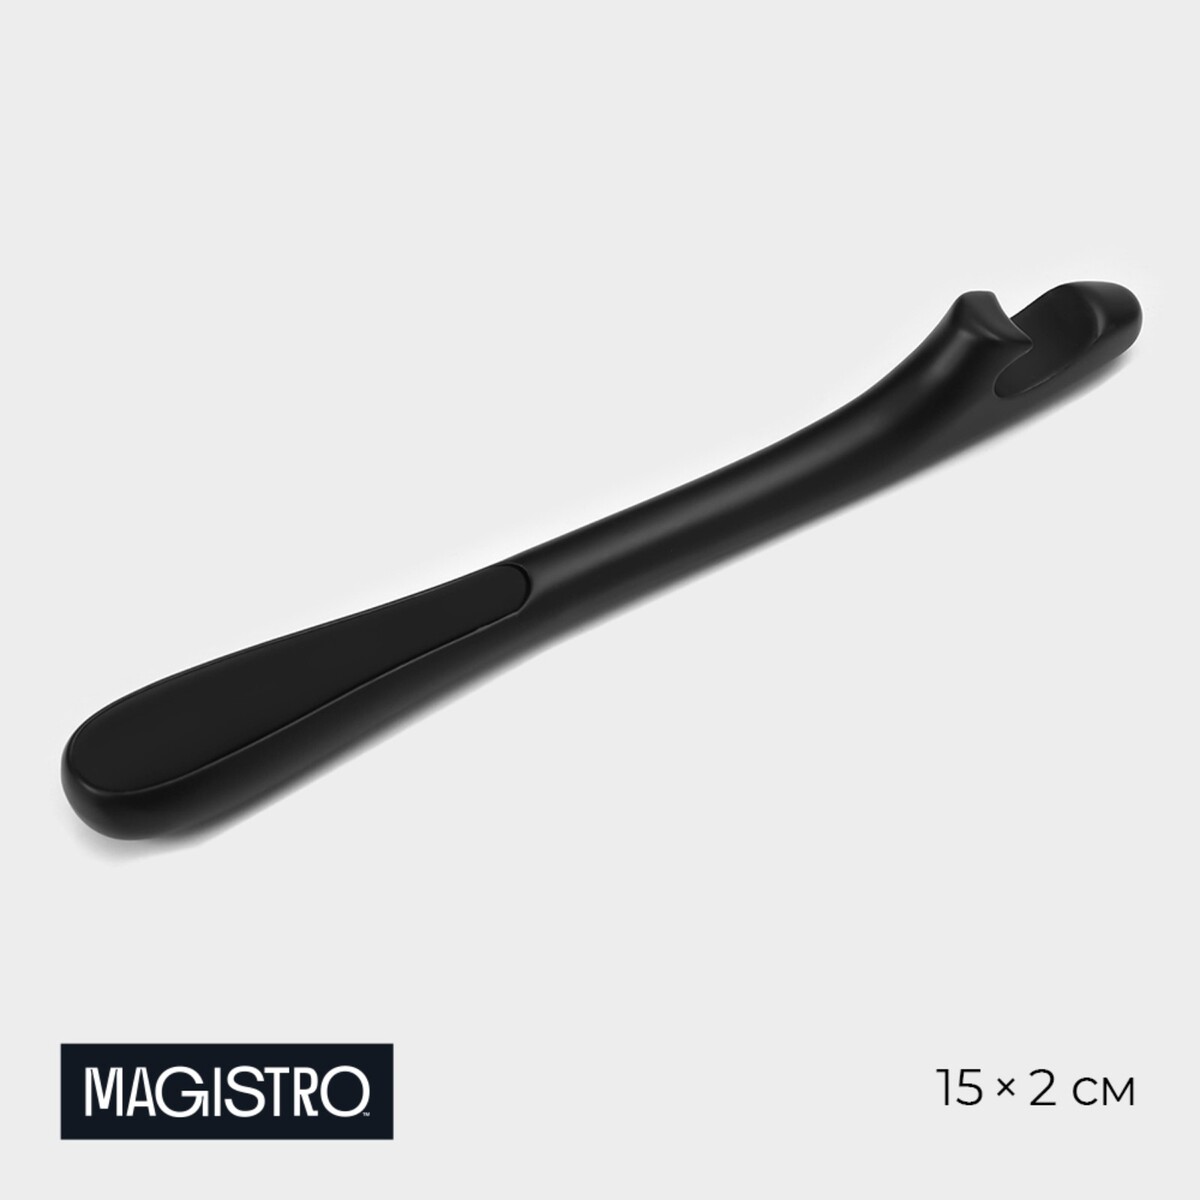 Открывашка magistro vantablack, 15×2 см, цвет черный открывашка для банок